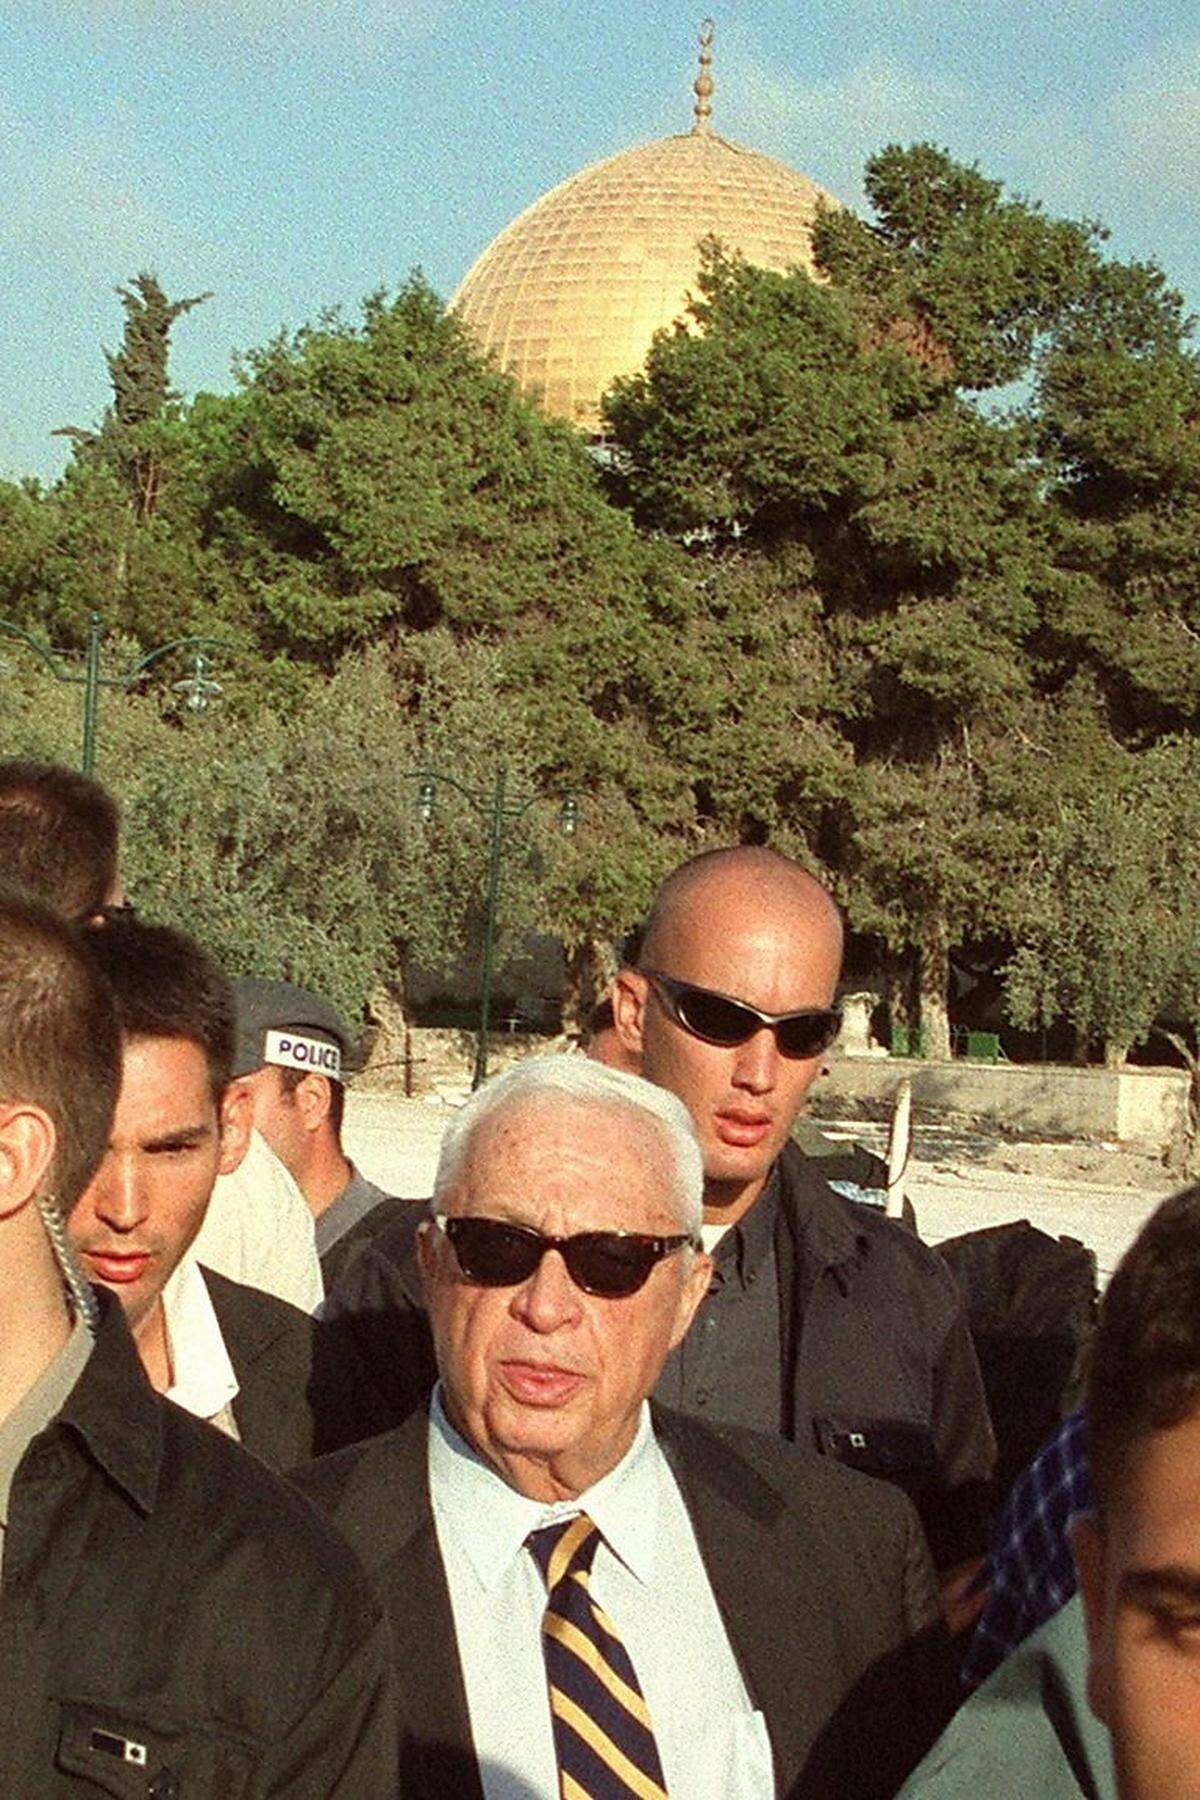 Auf den Krieg folgte die Politik: 1973 wurde Scharon erstmals in die Knesset gewählt. Mehrfach war er in der Folge Minister, unter anderem diente er als Verteidigungsminister, als mit Israel verbündete Milizen im Libanon Massaker in palästinensischen Flüchtlingslagern begingen. Das Bild zeigt den damaligen Oppositionsführer 2000 bei einem umstrittenen Besuch auf dem Tempelberg in Jerusalm, der als Auslöser der Zweiten Intifada gilt.